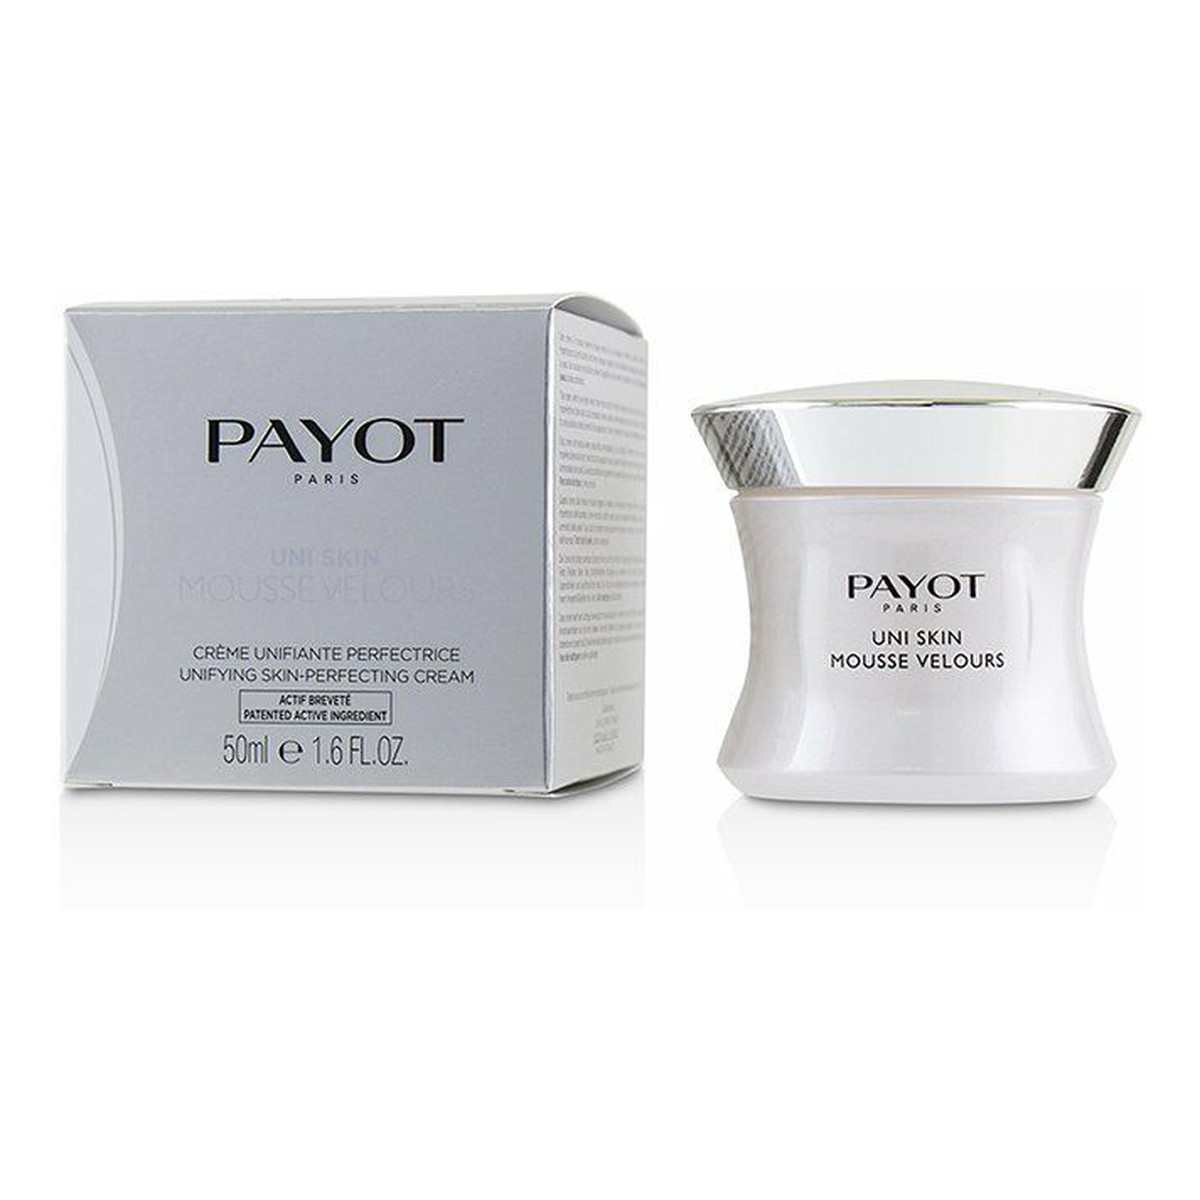 Payot Uni Skin Mousse Velours krem do twarzy na dzień 50ml